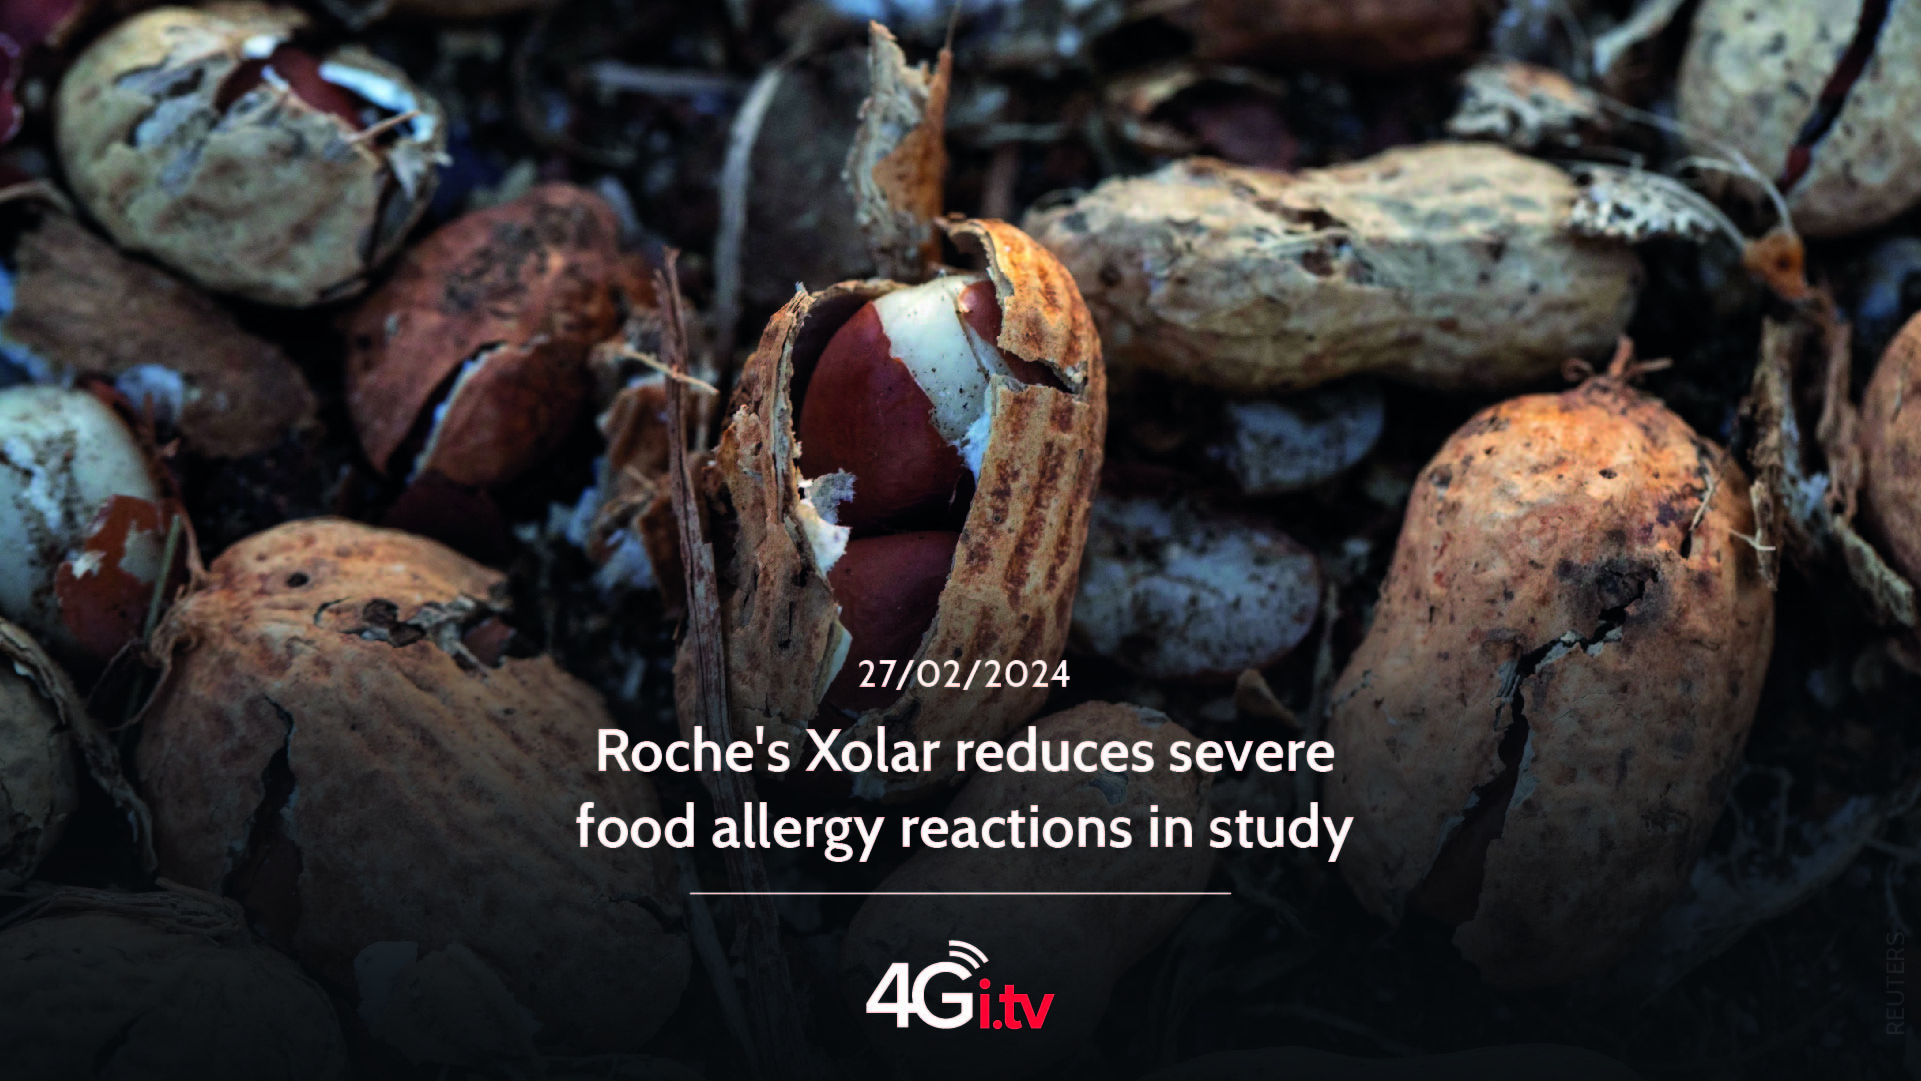 Подробнее о статье Roche’s Xolar reduces severe food allergy reactions in study